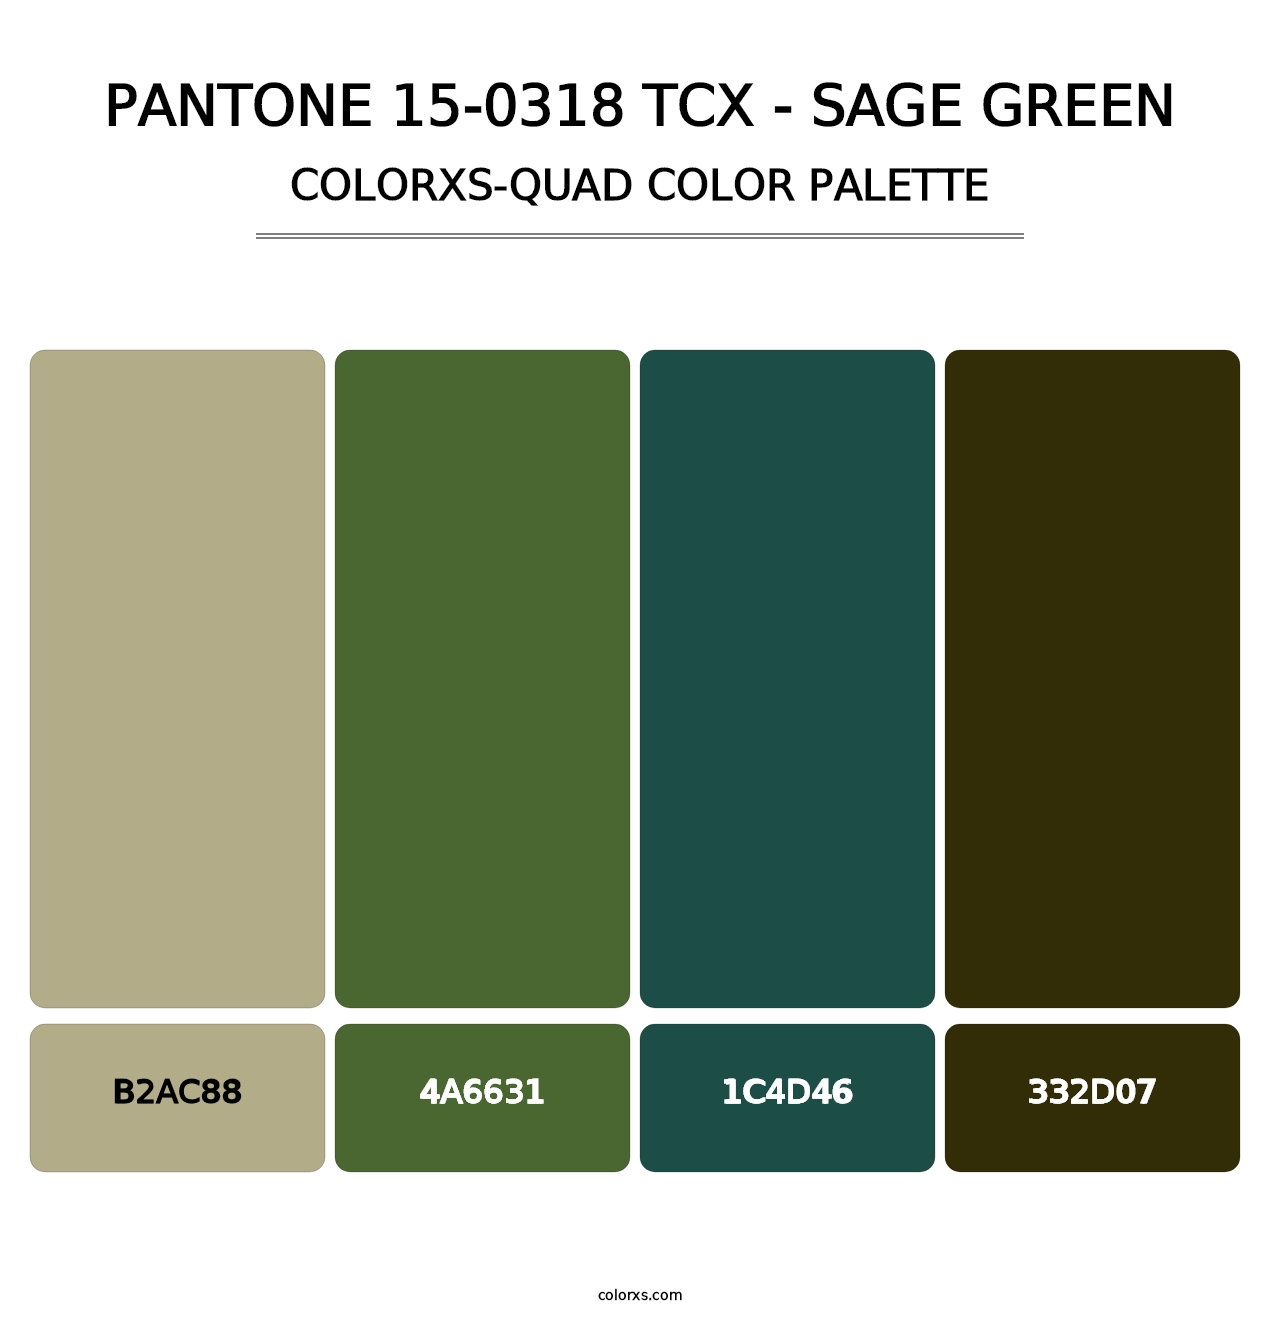 PANTONE 15-0318 TCX - Sage Green - Colorxs Quad Palette